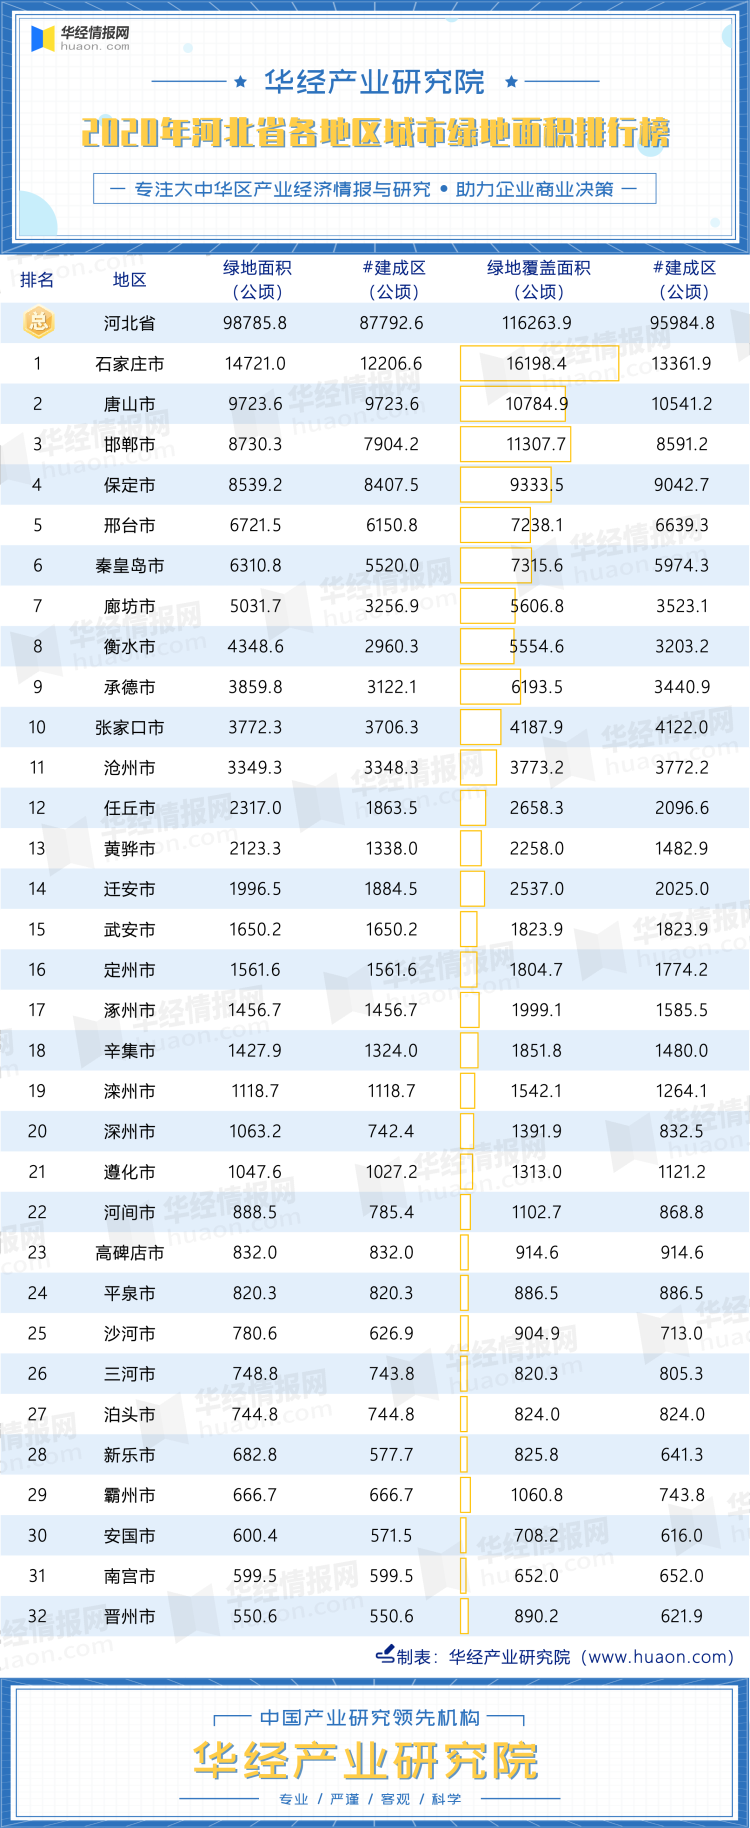 2020年河北省各地区城市绿地面积排行榜